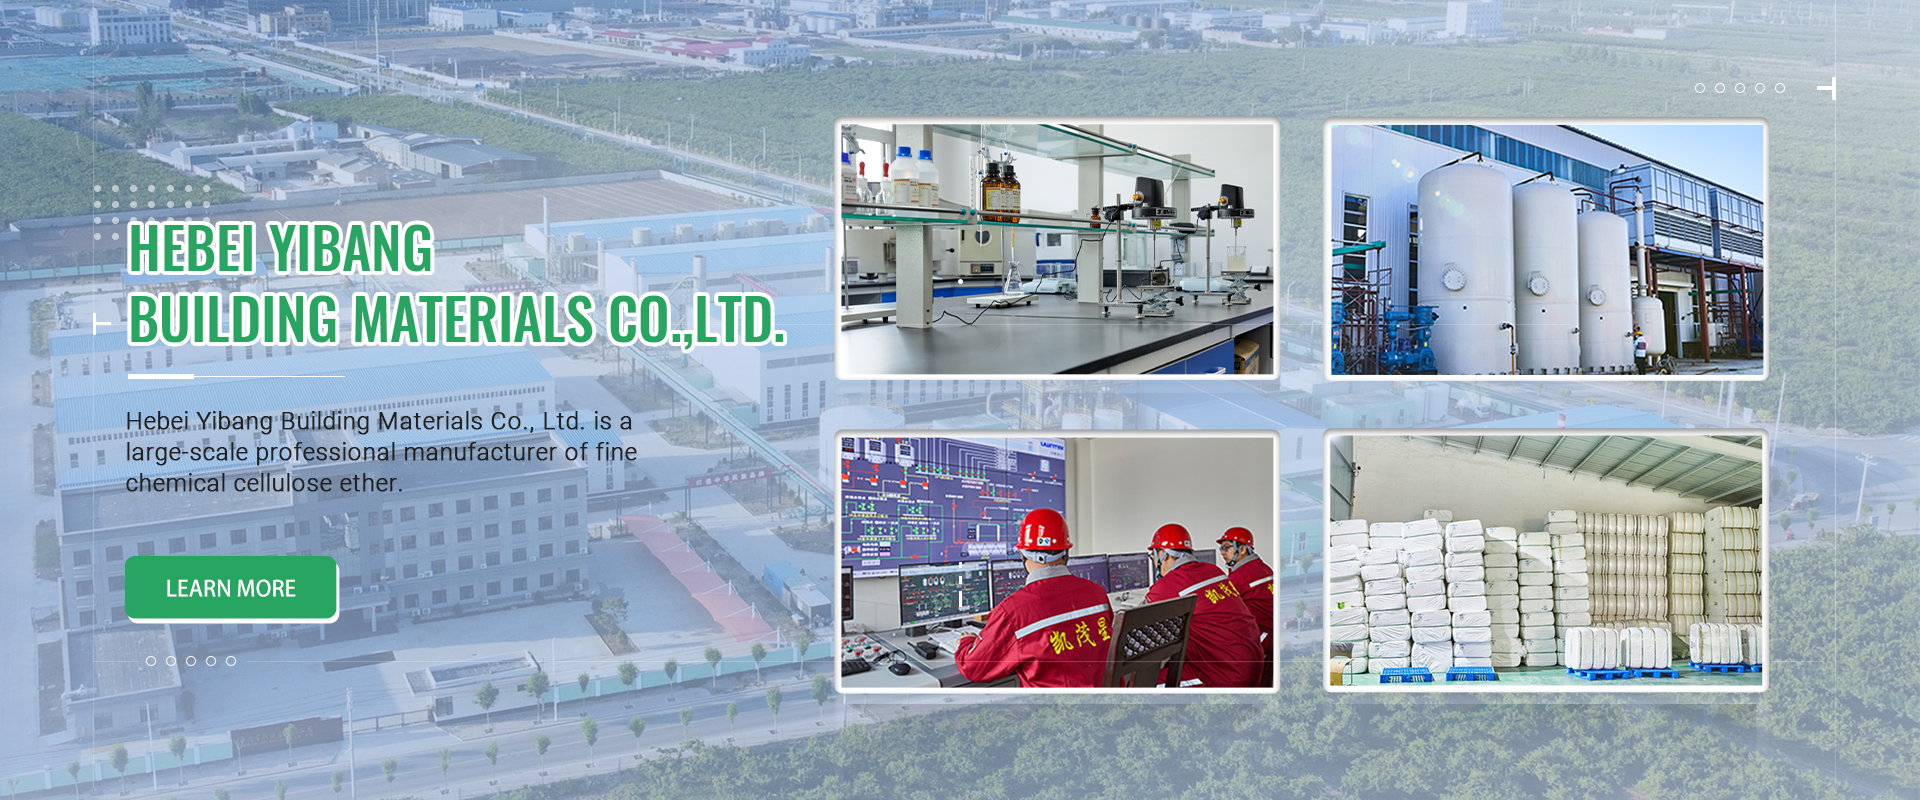 किन Yibang सेल्युलोज Hebei, चीन मा सबैभन्दा ठूलो सेलुलोज निर्यात कारखाना बन्न सक्छ